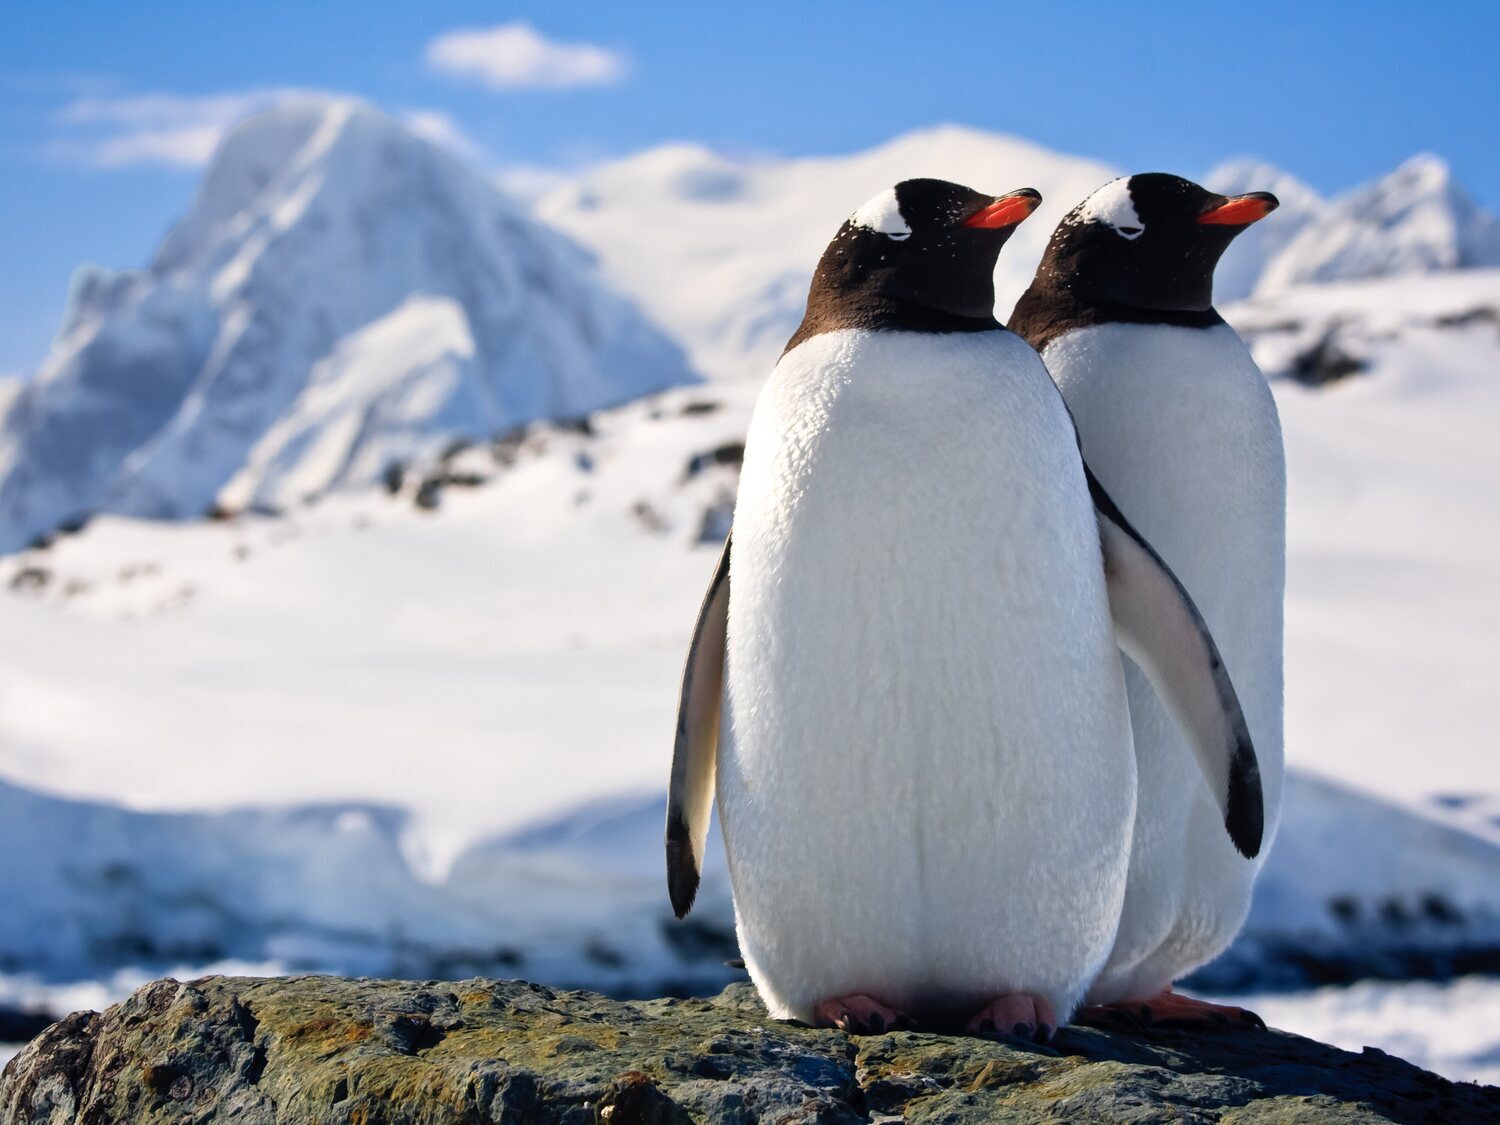 Curiosa oferta de trabajo: 2.000 euros al mes por contar pingüinos en la Antártida